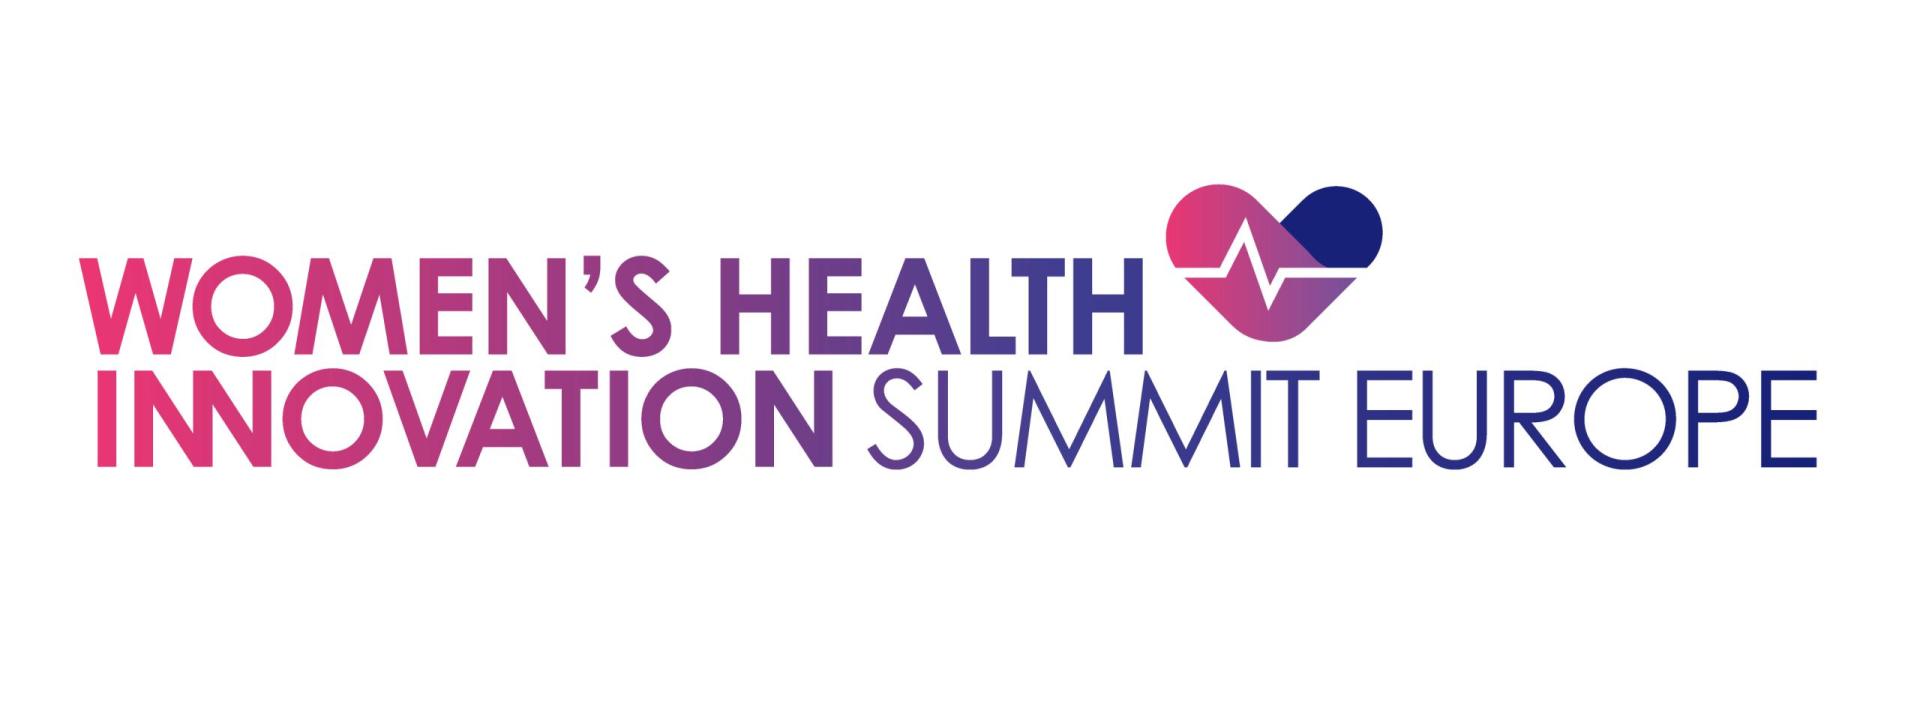 Women's Health Innovation Summit, Europe